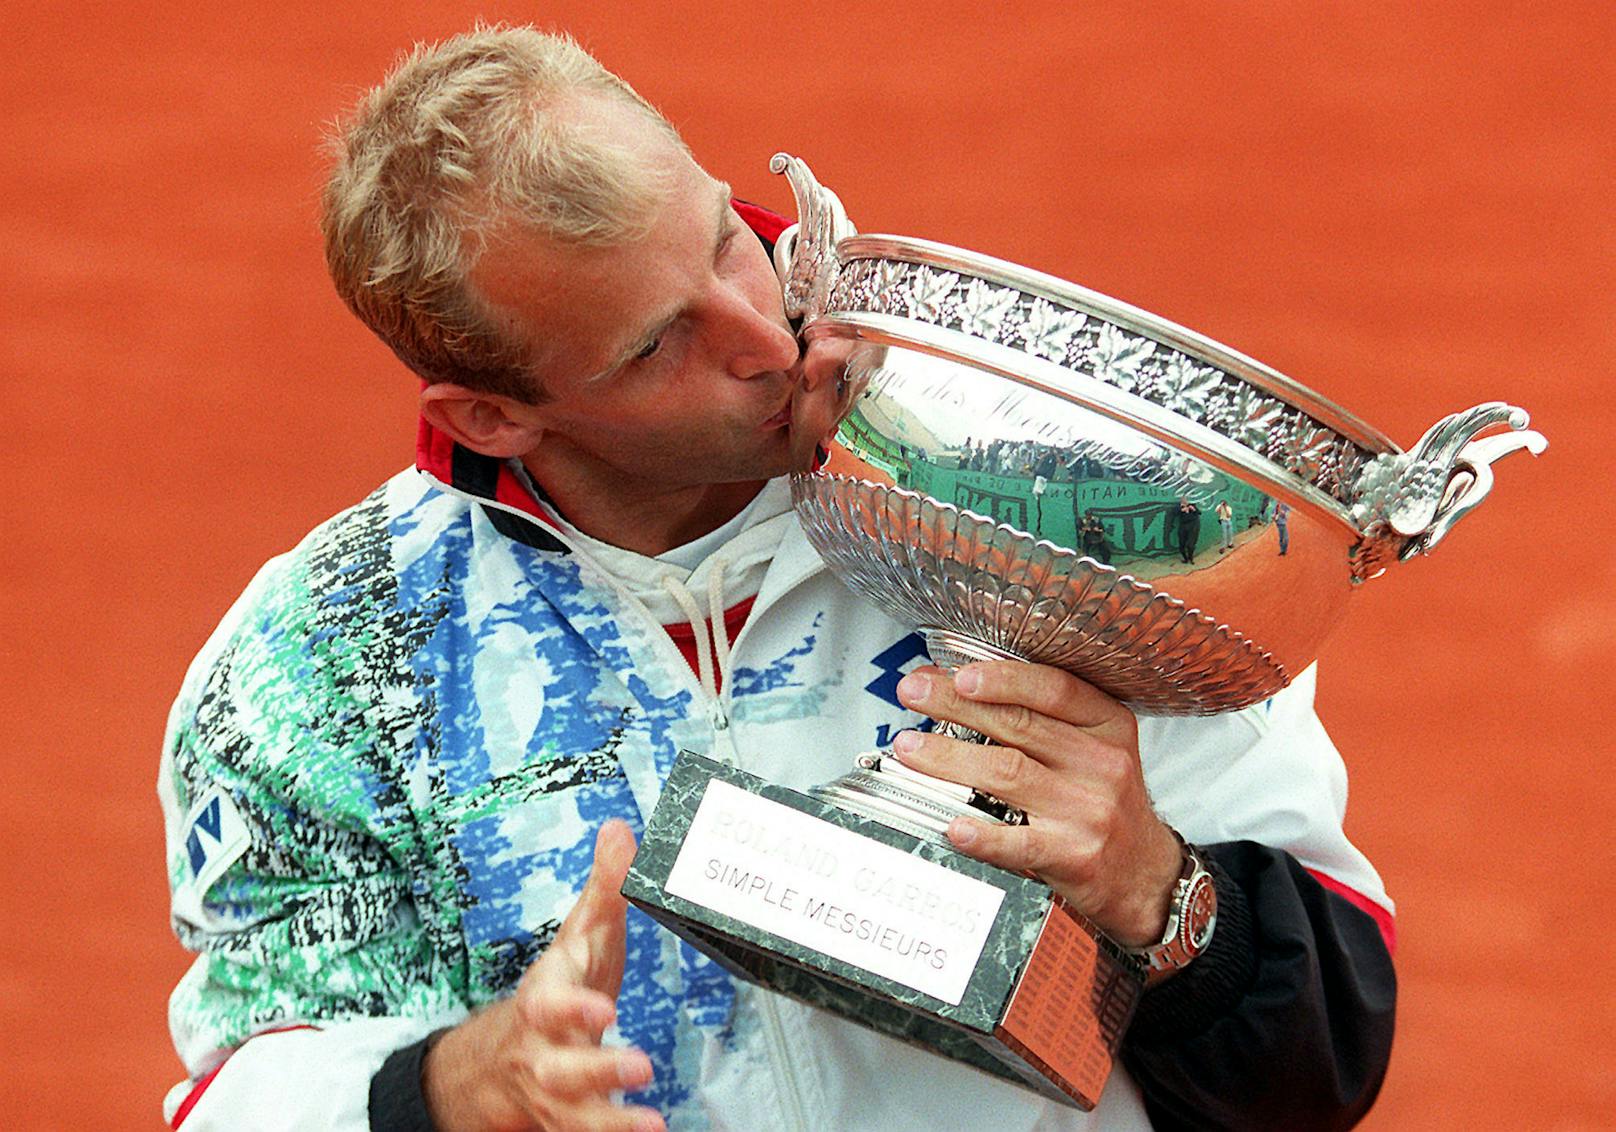 Thomas Muster ist bis heute der einzige österreichische Grand-Slam-Sieger im Einzel. Sein historischer Titel jährt sich heuer zum 25. Mal. Wir blicken zurück auf Musters Turnier seines Lebens: die French Open 1995.